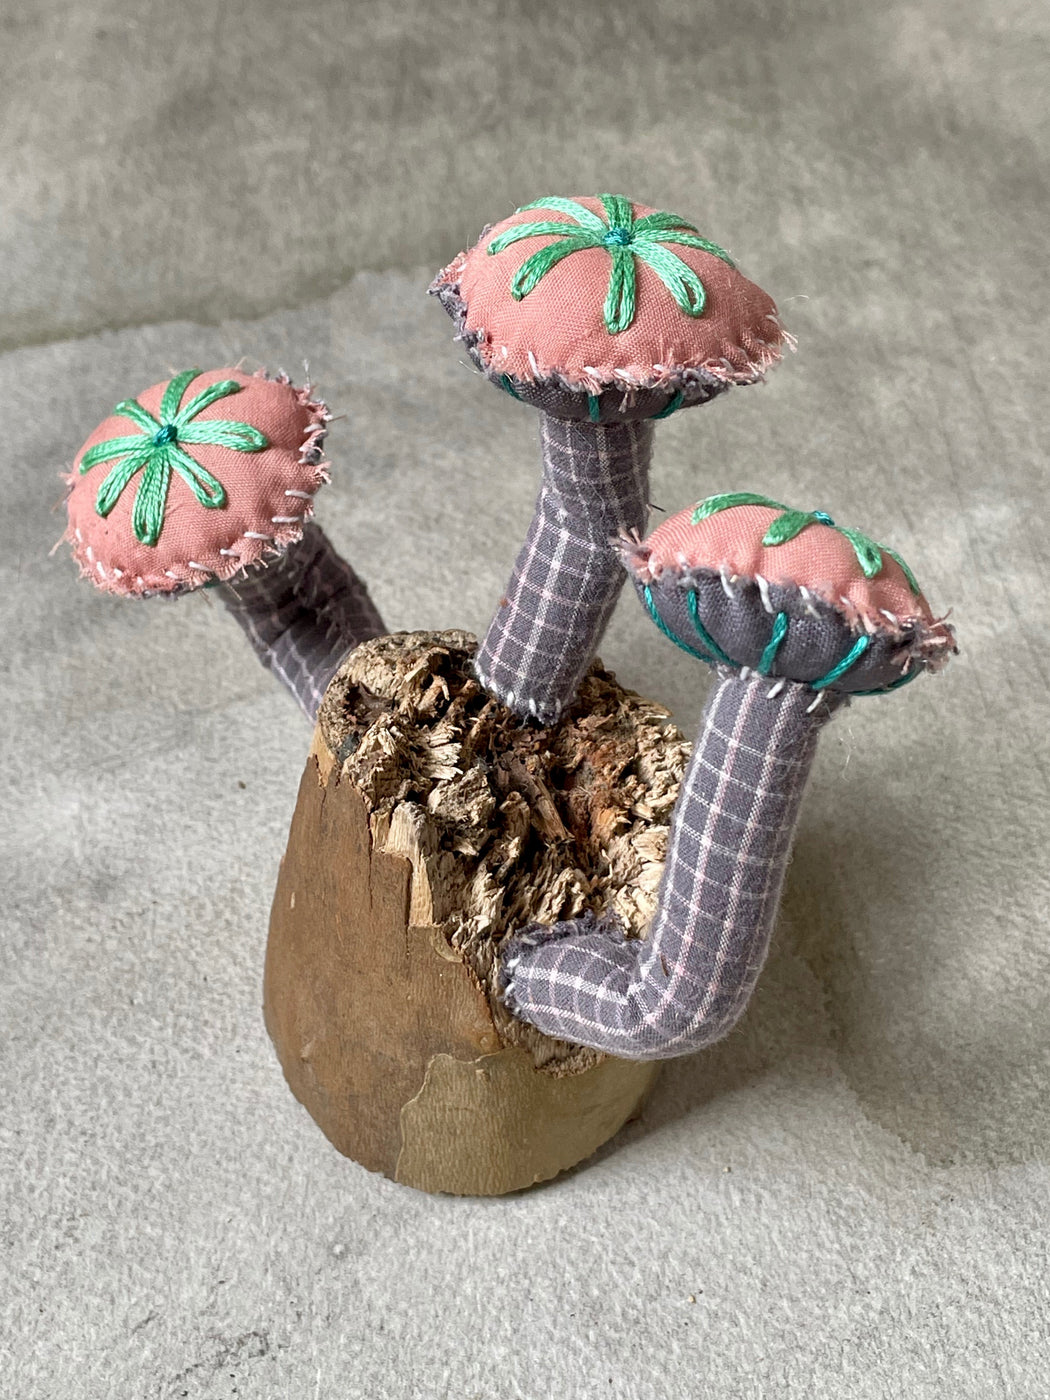 Fabric "Fungi" Sculpture by Amanda Adams